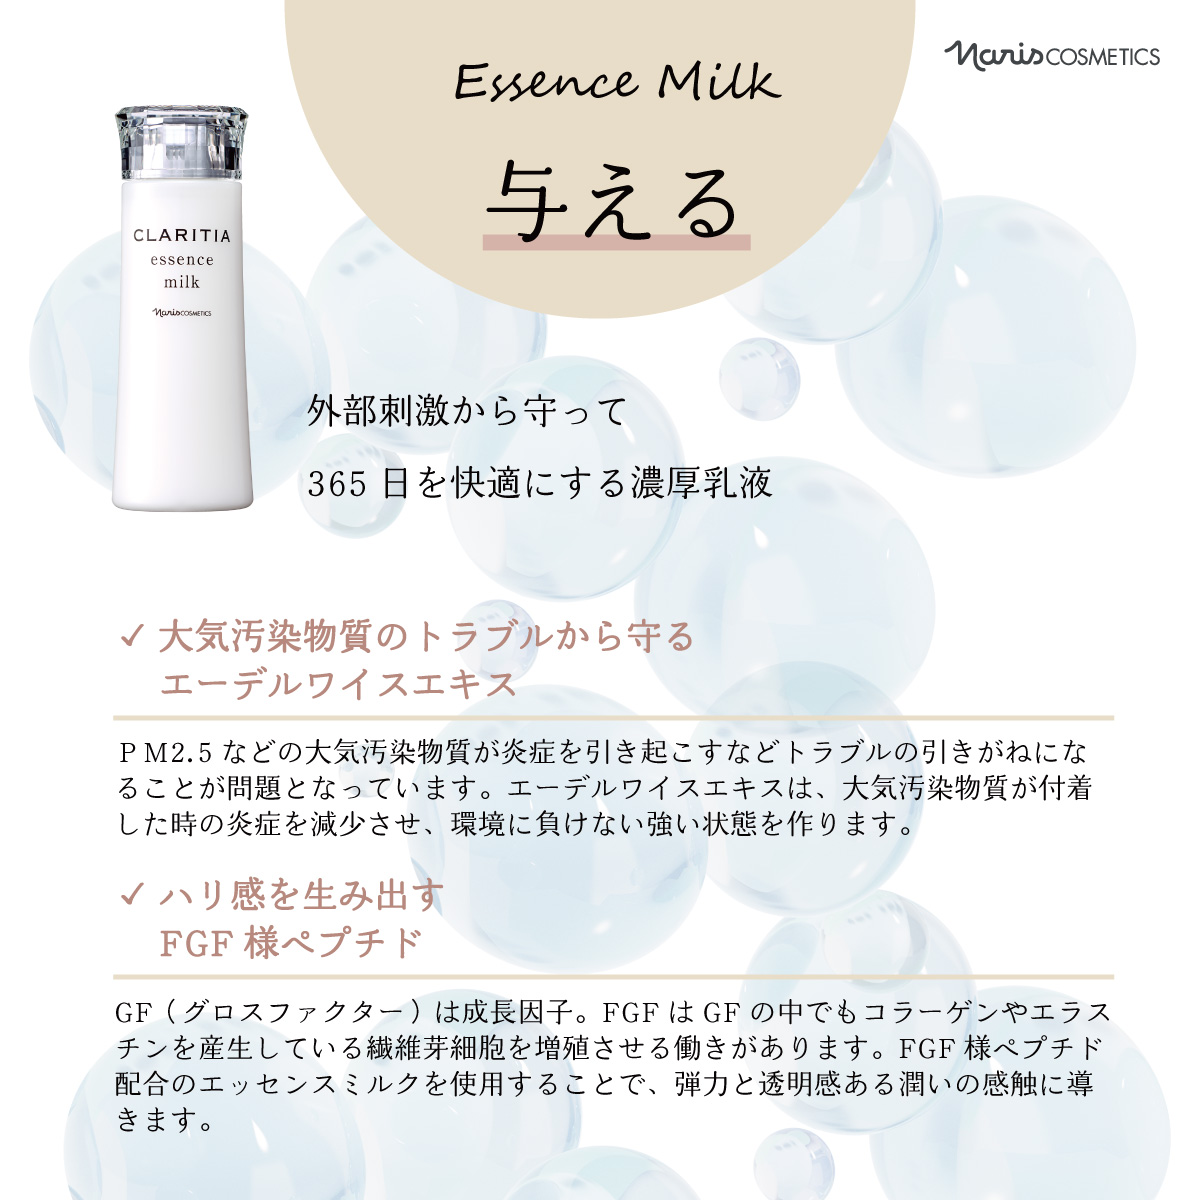 ナリス化粧品 クラリティア エッセンスミルク 120ml | アコールショップ